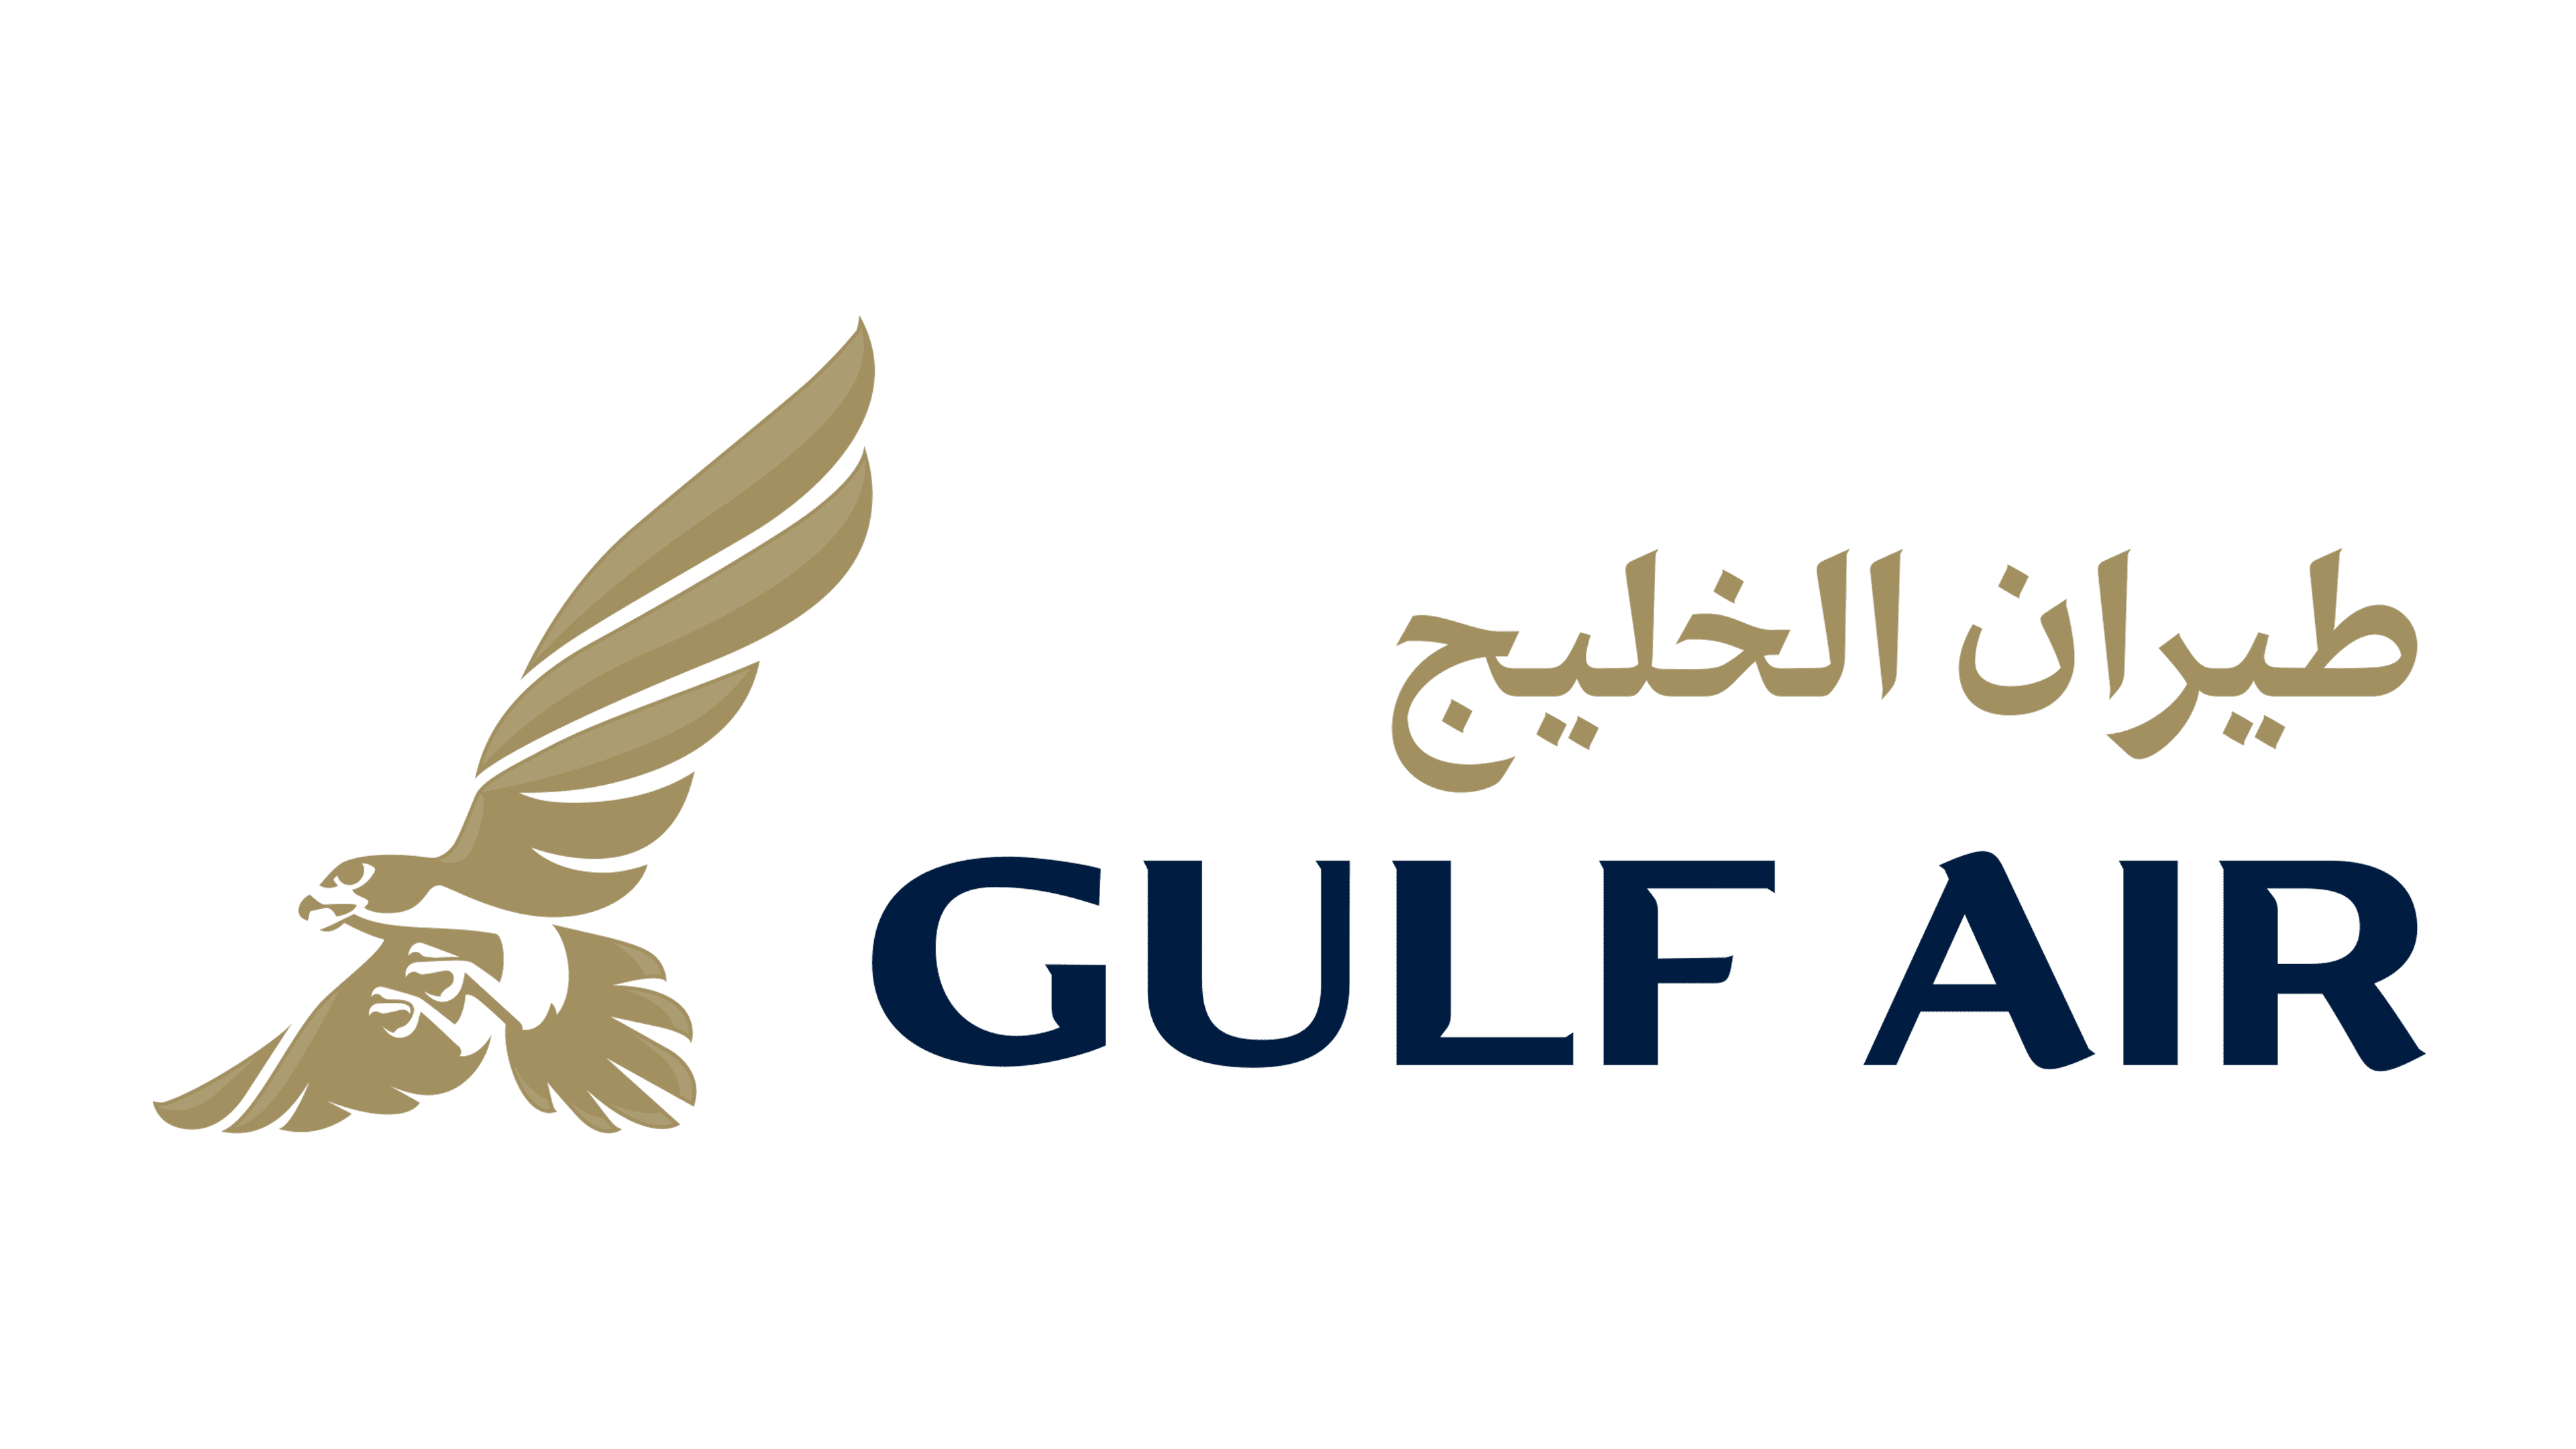 https://1000logos.net/wp-content/uploads/2021/04/Gulf-Air-logo.png